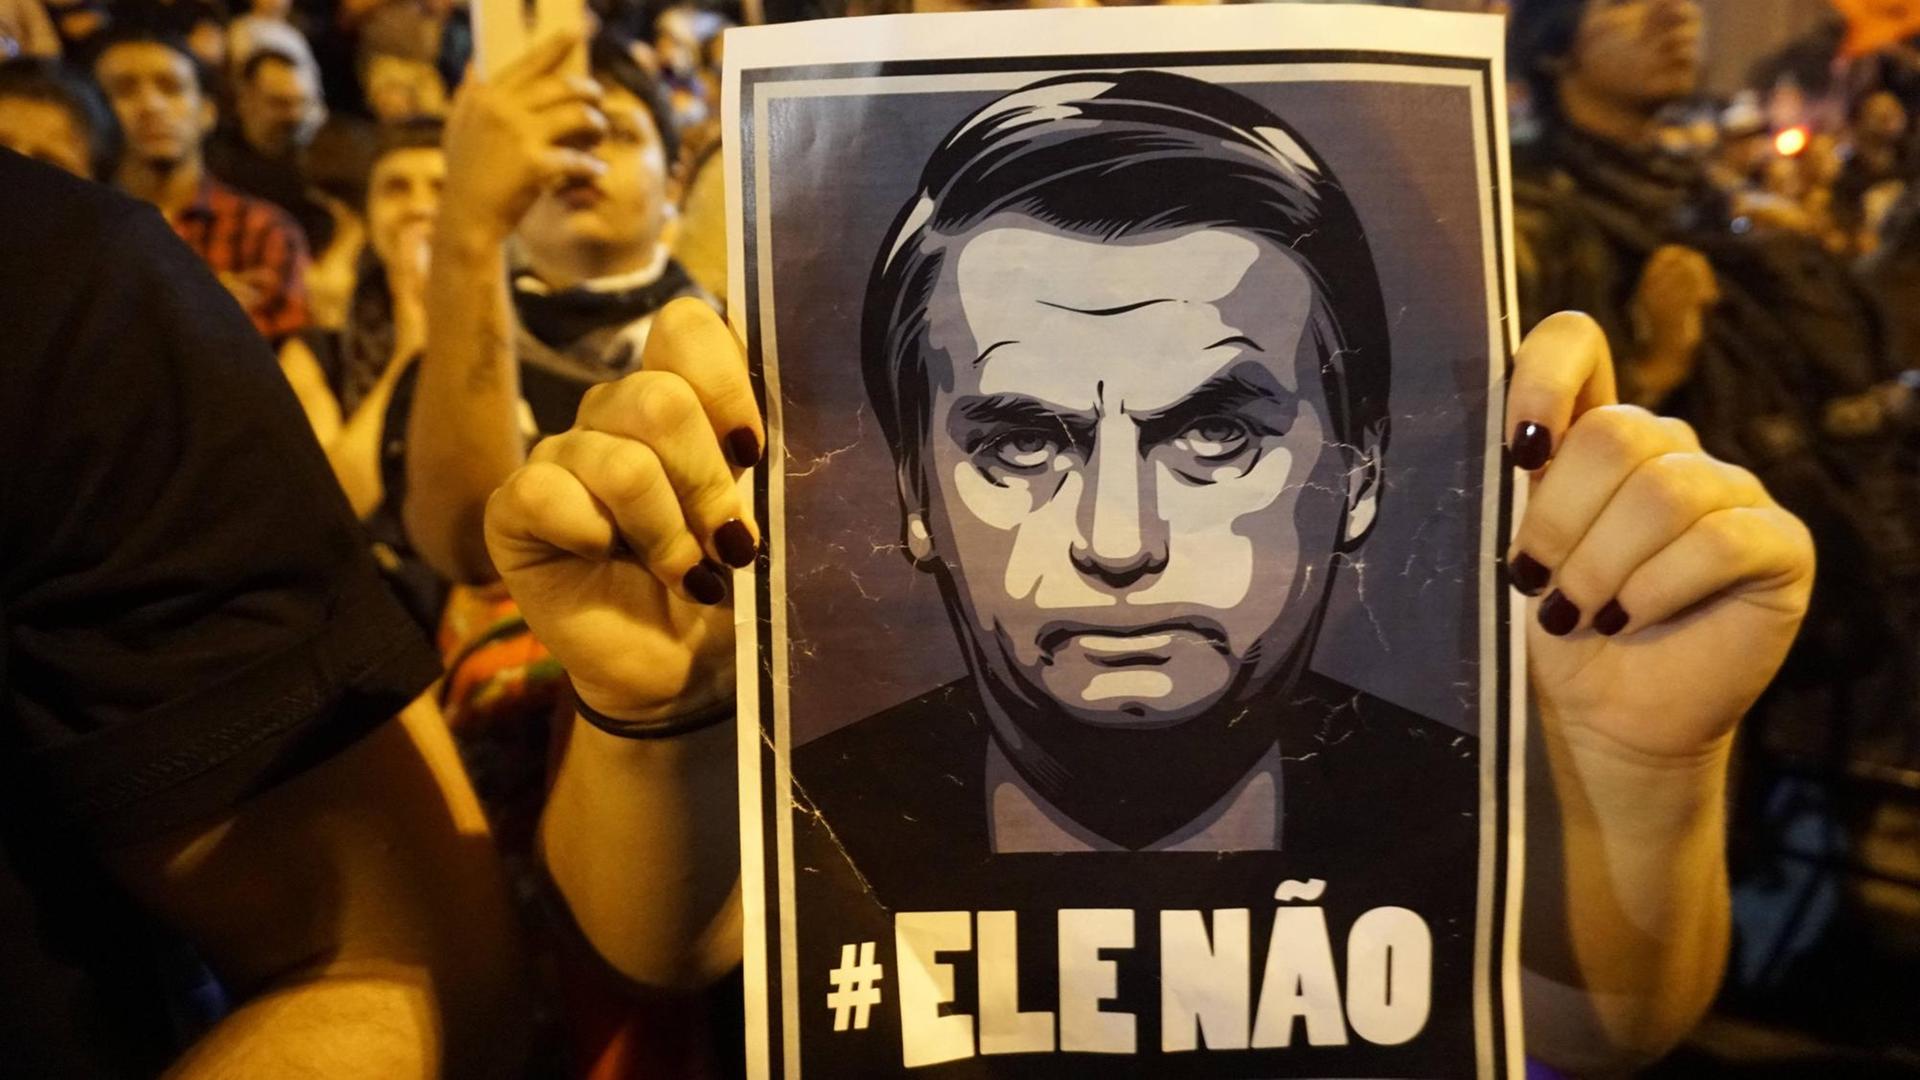 Demonstration gegen den brasilianischen Präsidenten Jair Bolsonaro. Zu sehen ist eine Fotokopie mit dem Präsidenten-Konterfei und dem Schriftzug: "Ele nao! - Der nicht!"